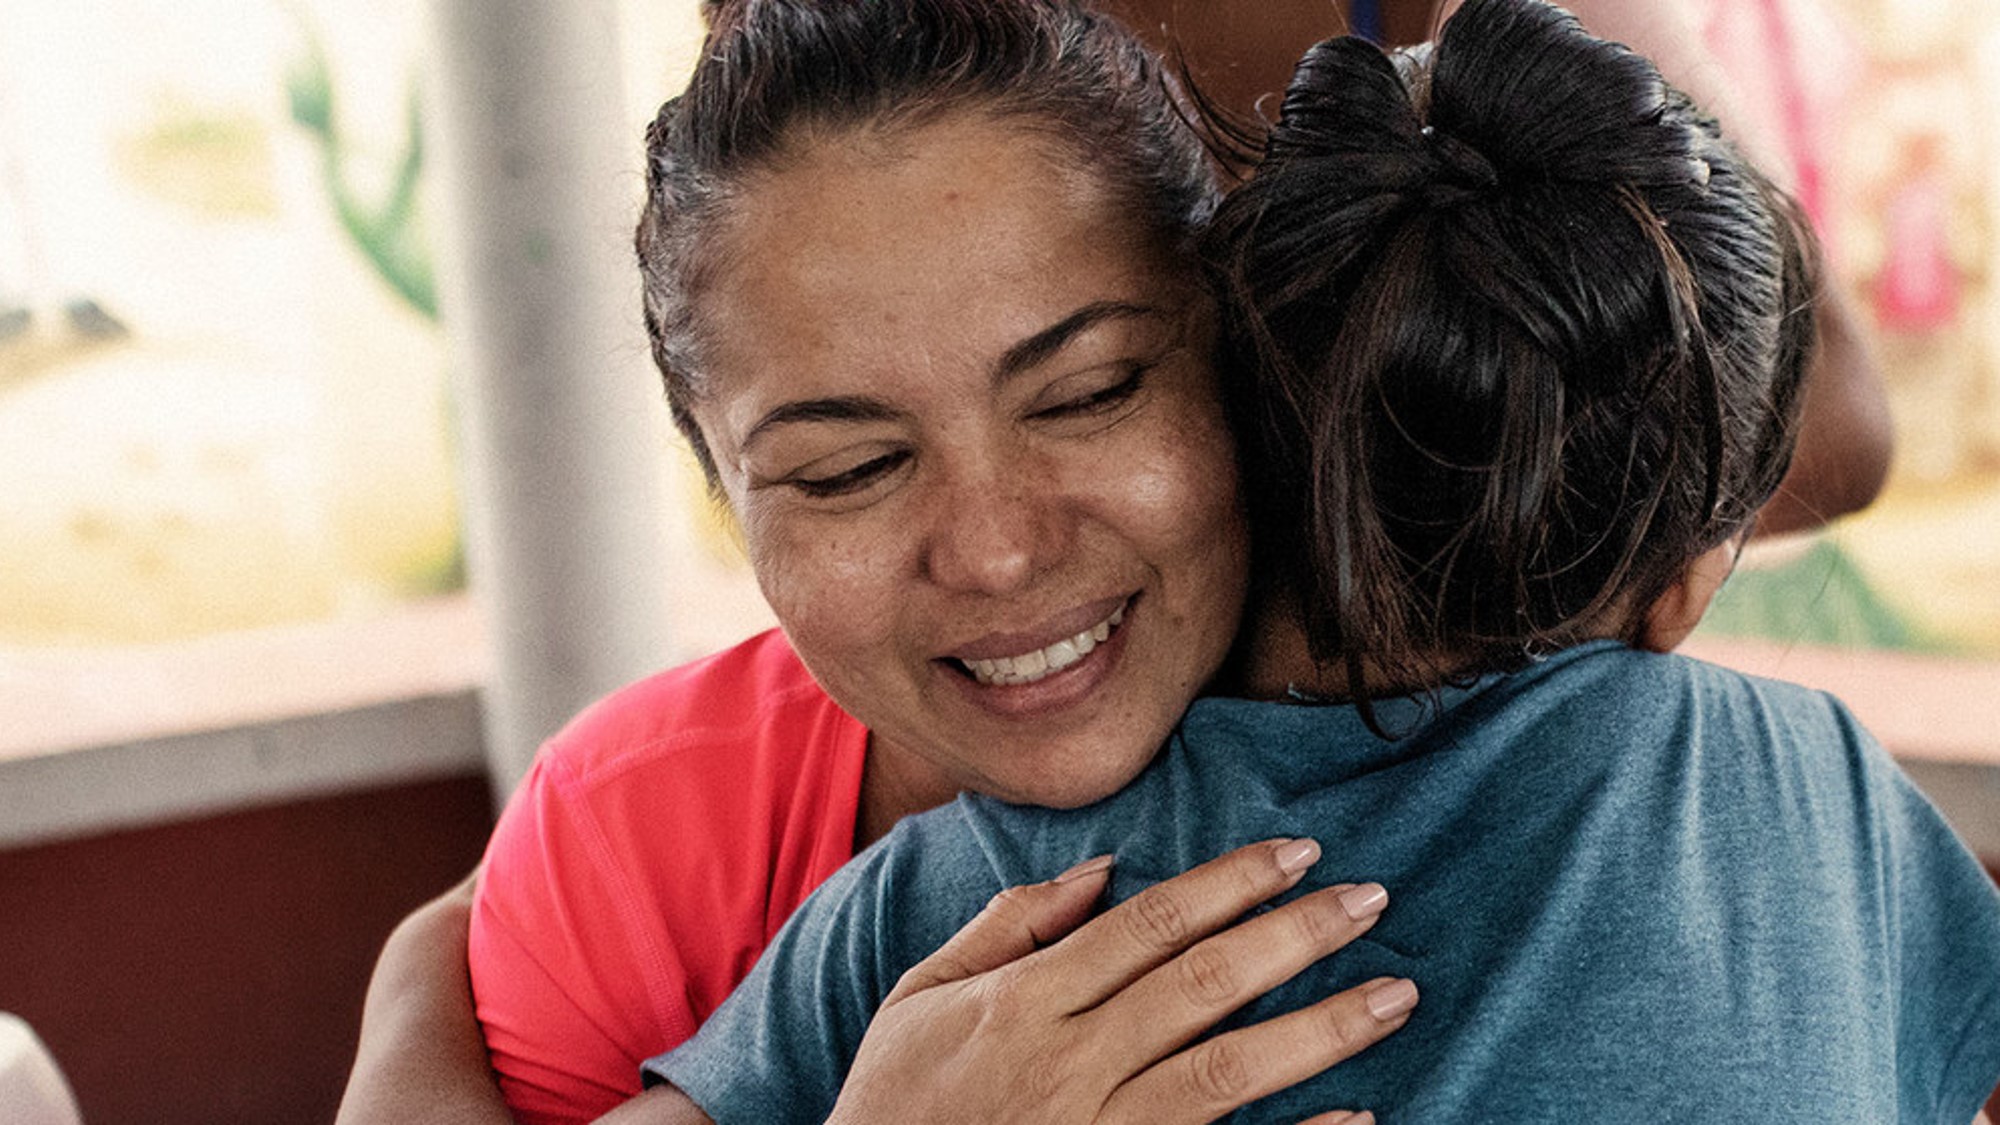 La situación de las niñas venezolanas en Colombia es “para ponerse a llorar”, describe Mayerlín Vergara